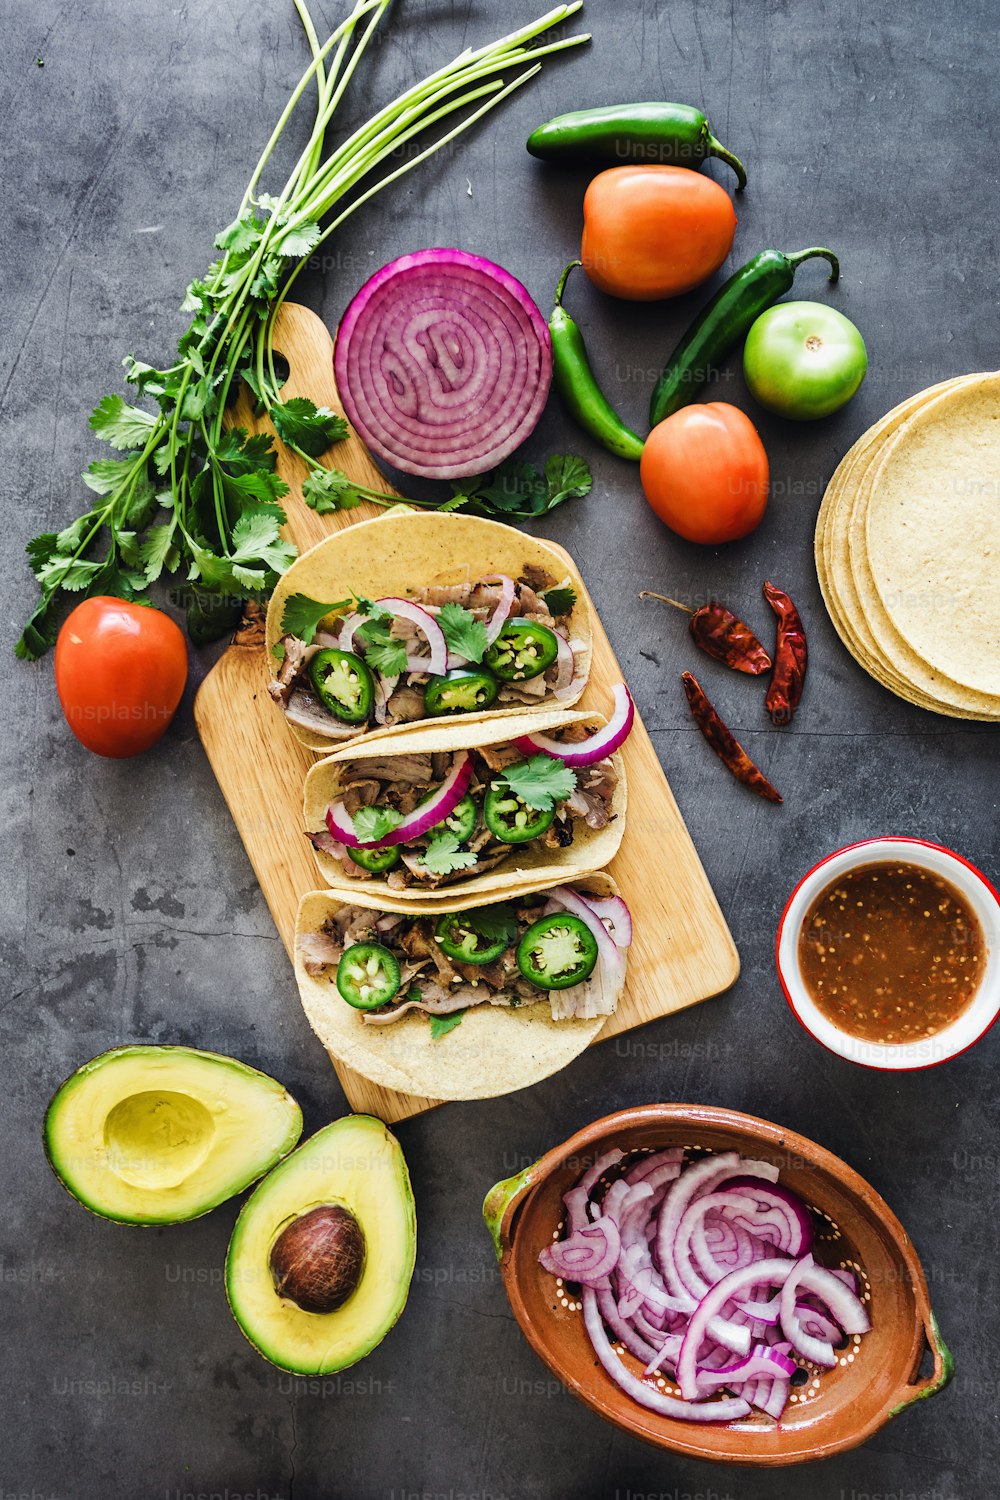 mexikanische Straßen-Tacos Zutaten mit Schweinefleisch-Carnitas, Tortillas, Avocado, Zwiebeln, Koriander in Mexiko-Stadt